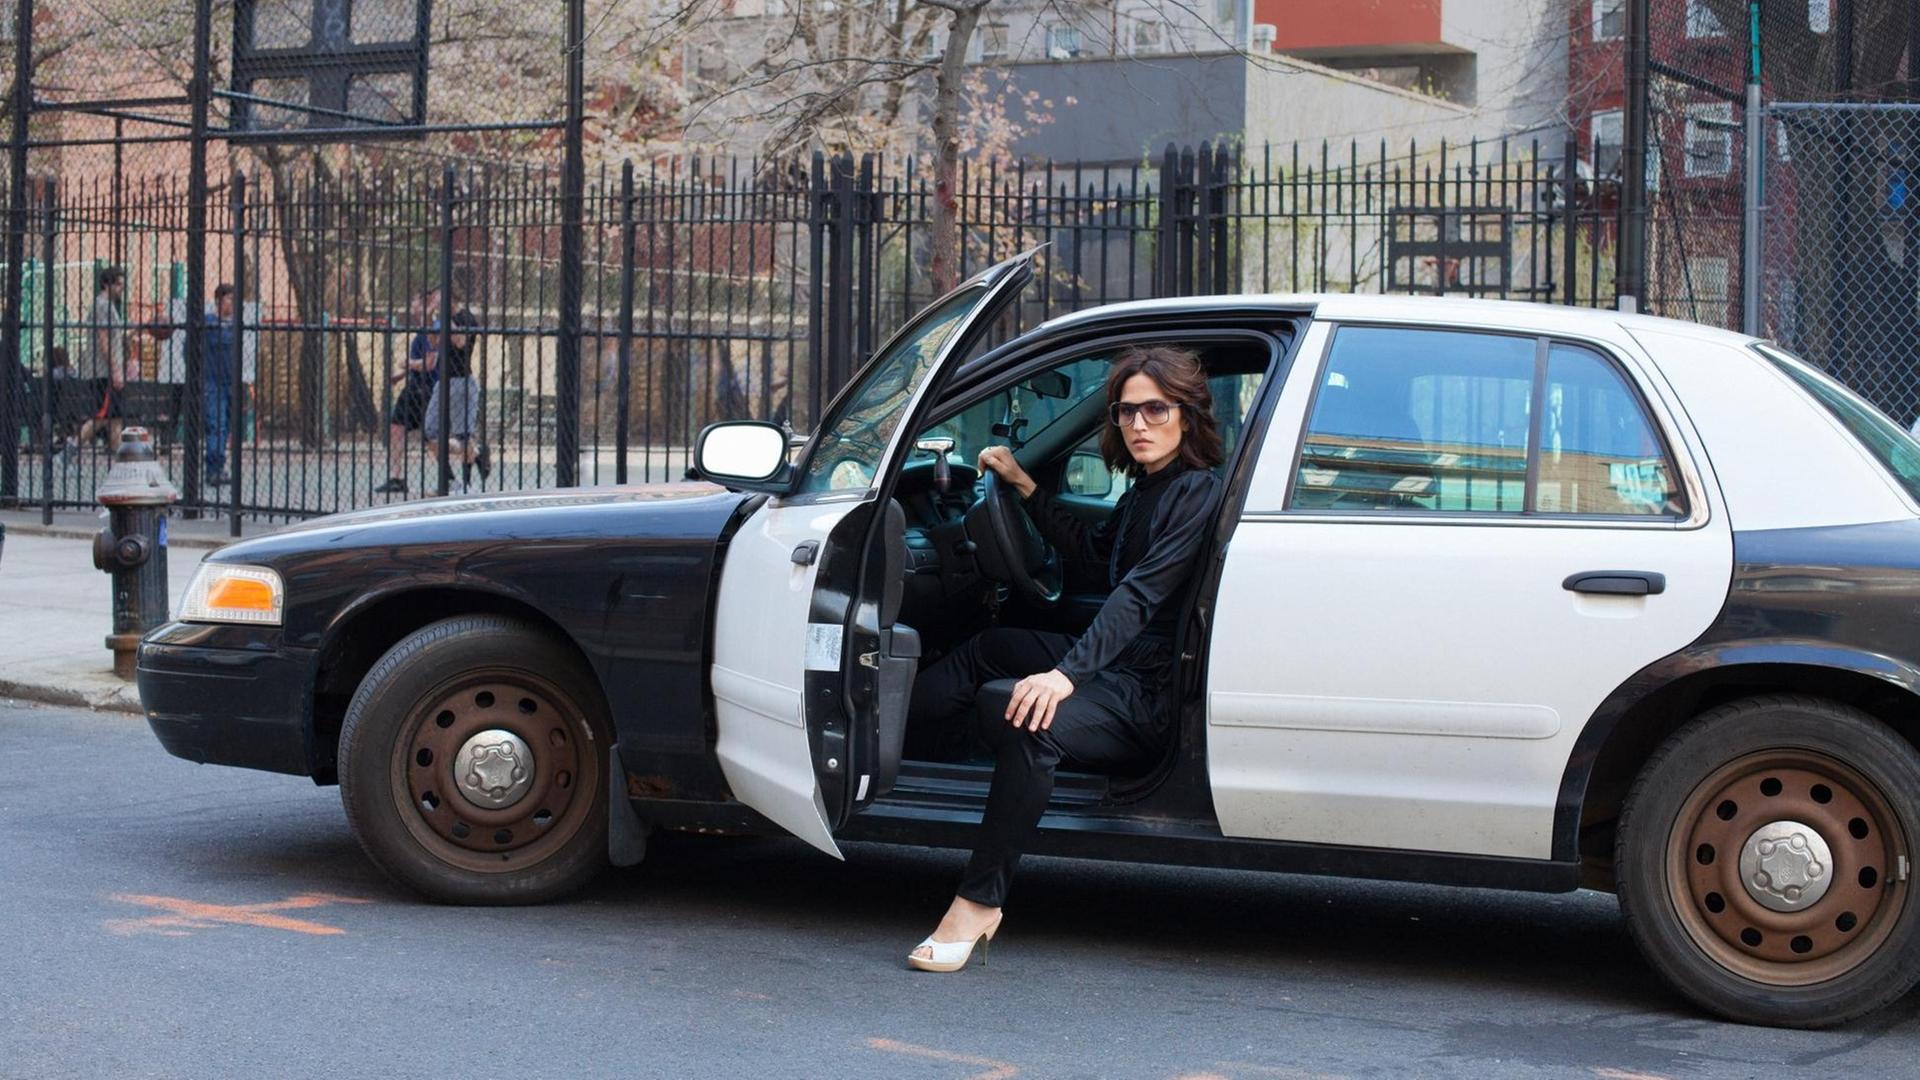 Eine Frau sitz am Steuer eine alten amerikanischen Polizeiautos. Die Autotür ist geöffnet. Ein Bein stellt sie auf dem auf dem Boden.